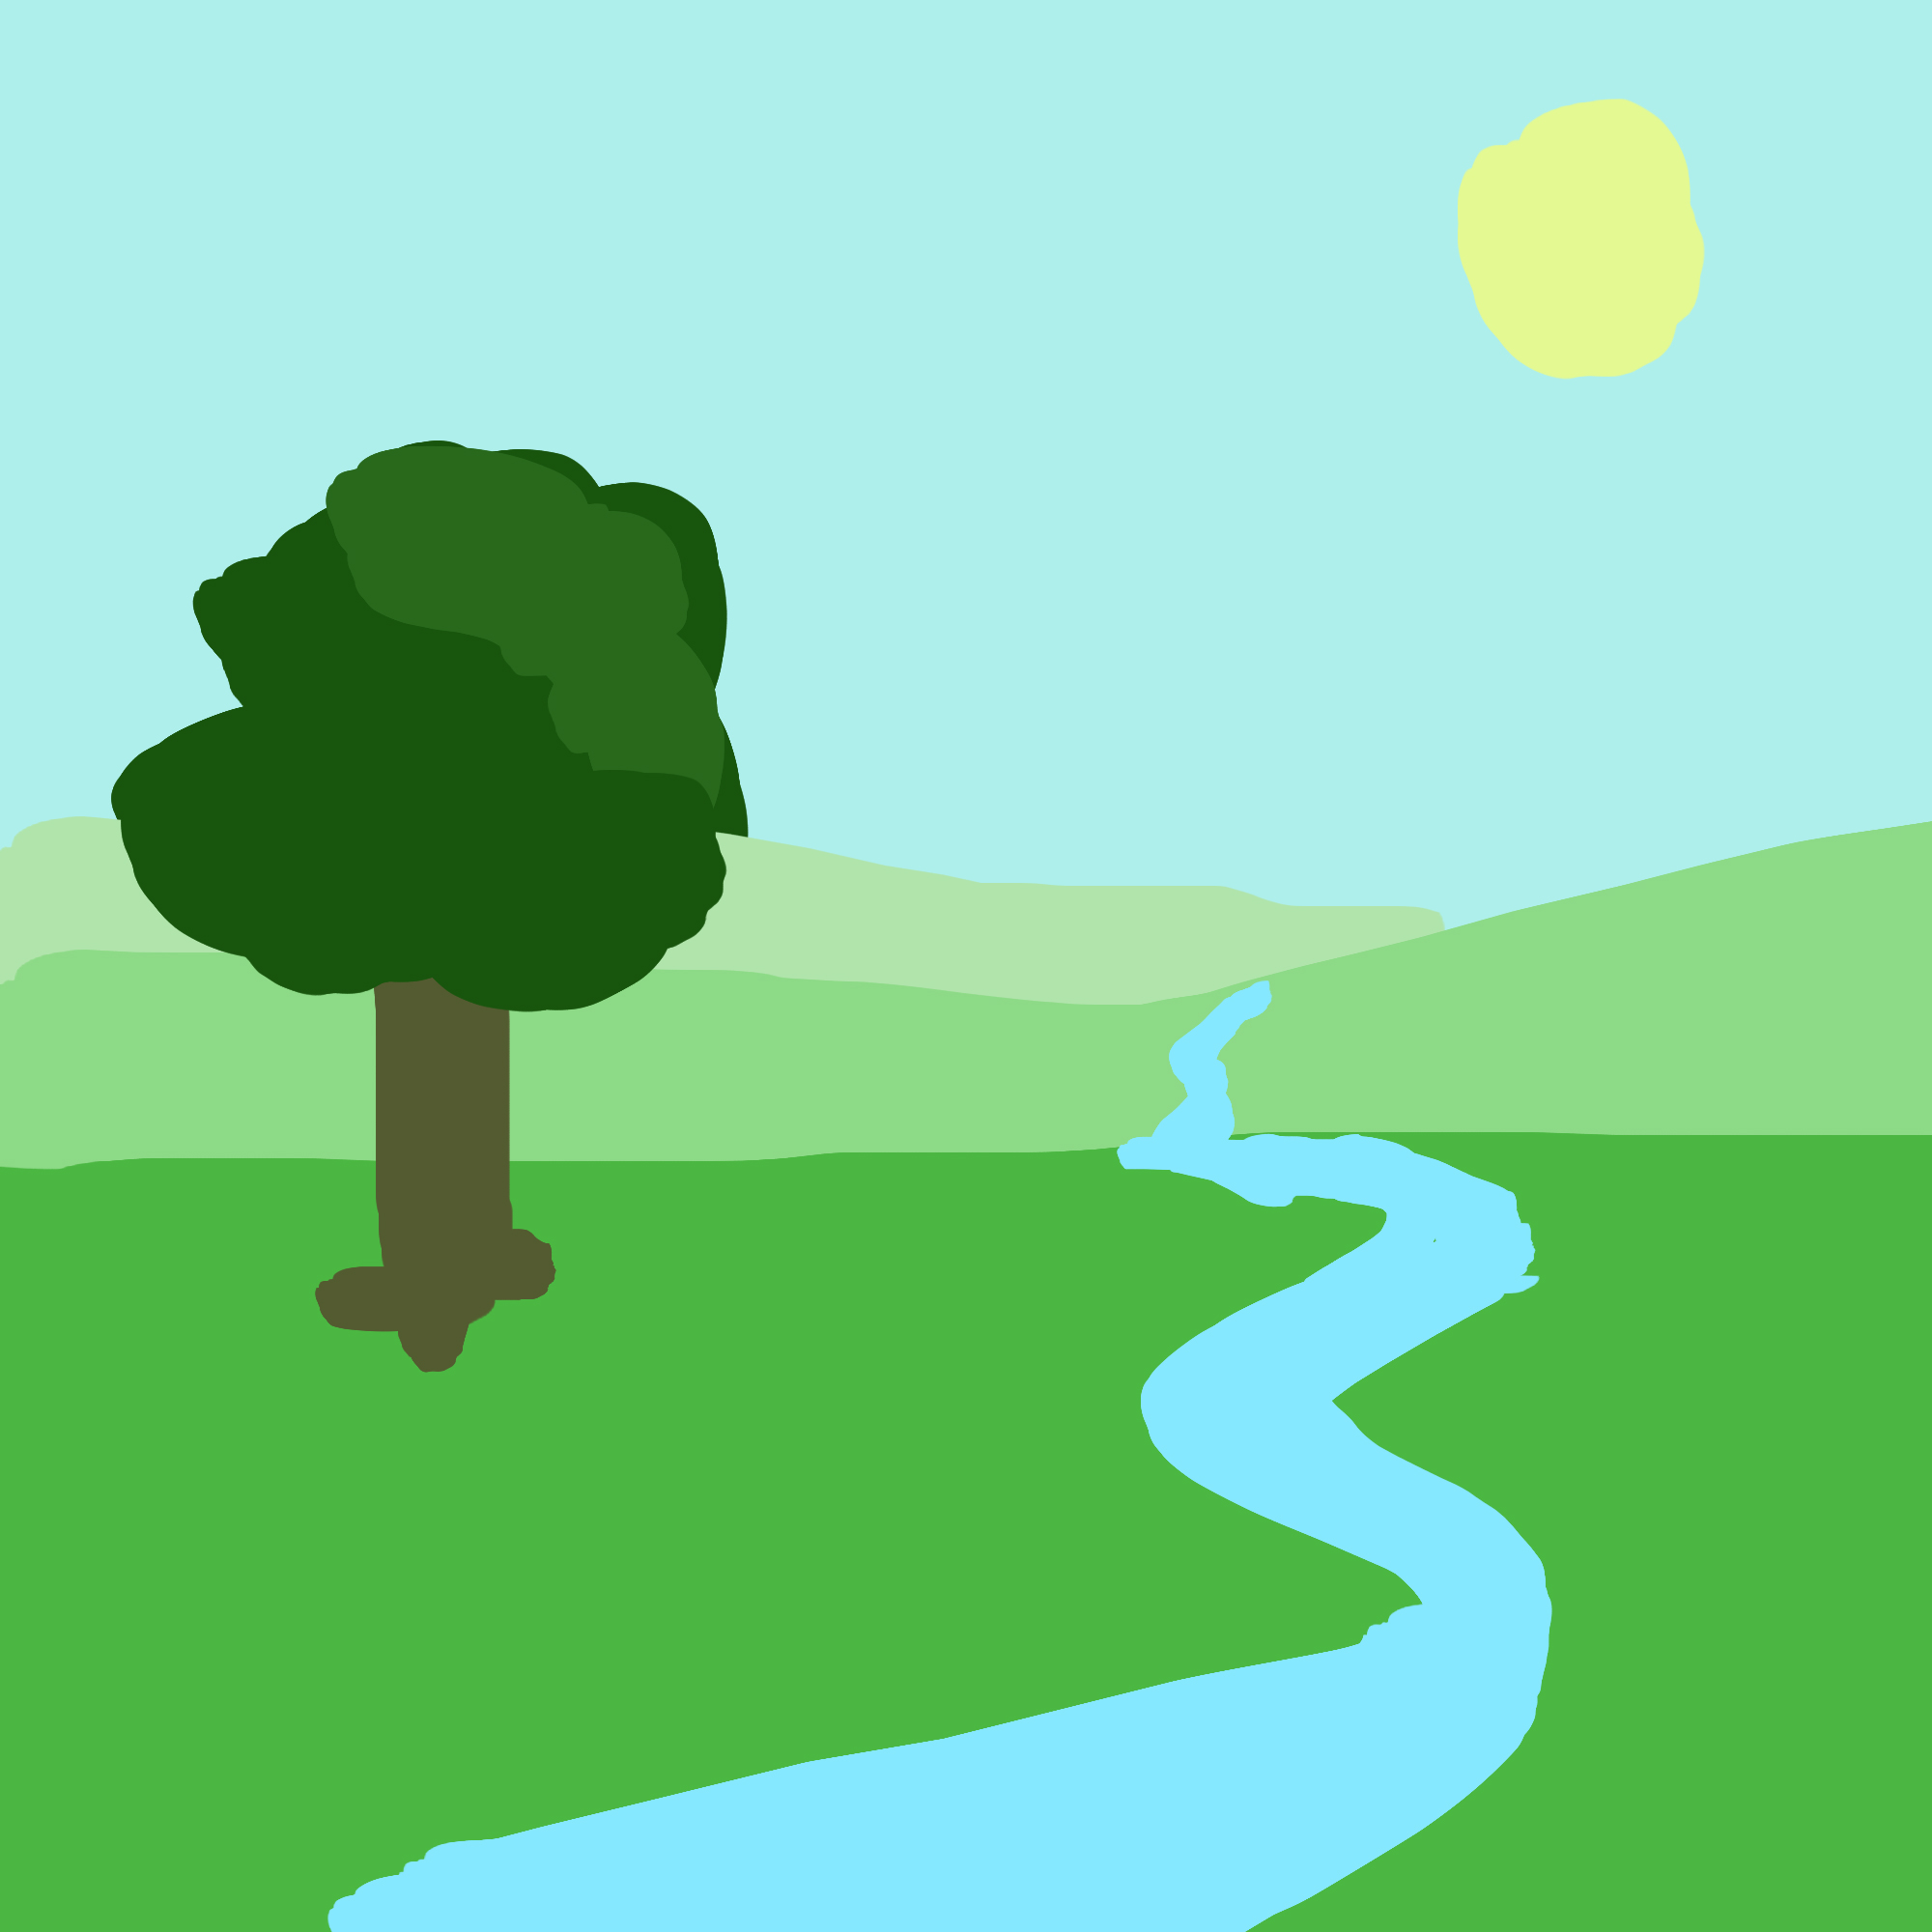 Une étendue d'herbe verte s'étendant à perte de vue
      traversée par une rivière à l'eau claire, et un arbre aux feuilles verdoyantes se tenant
       fièrement sous le soleil du matin.